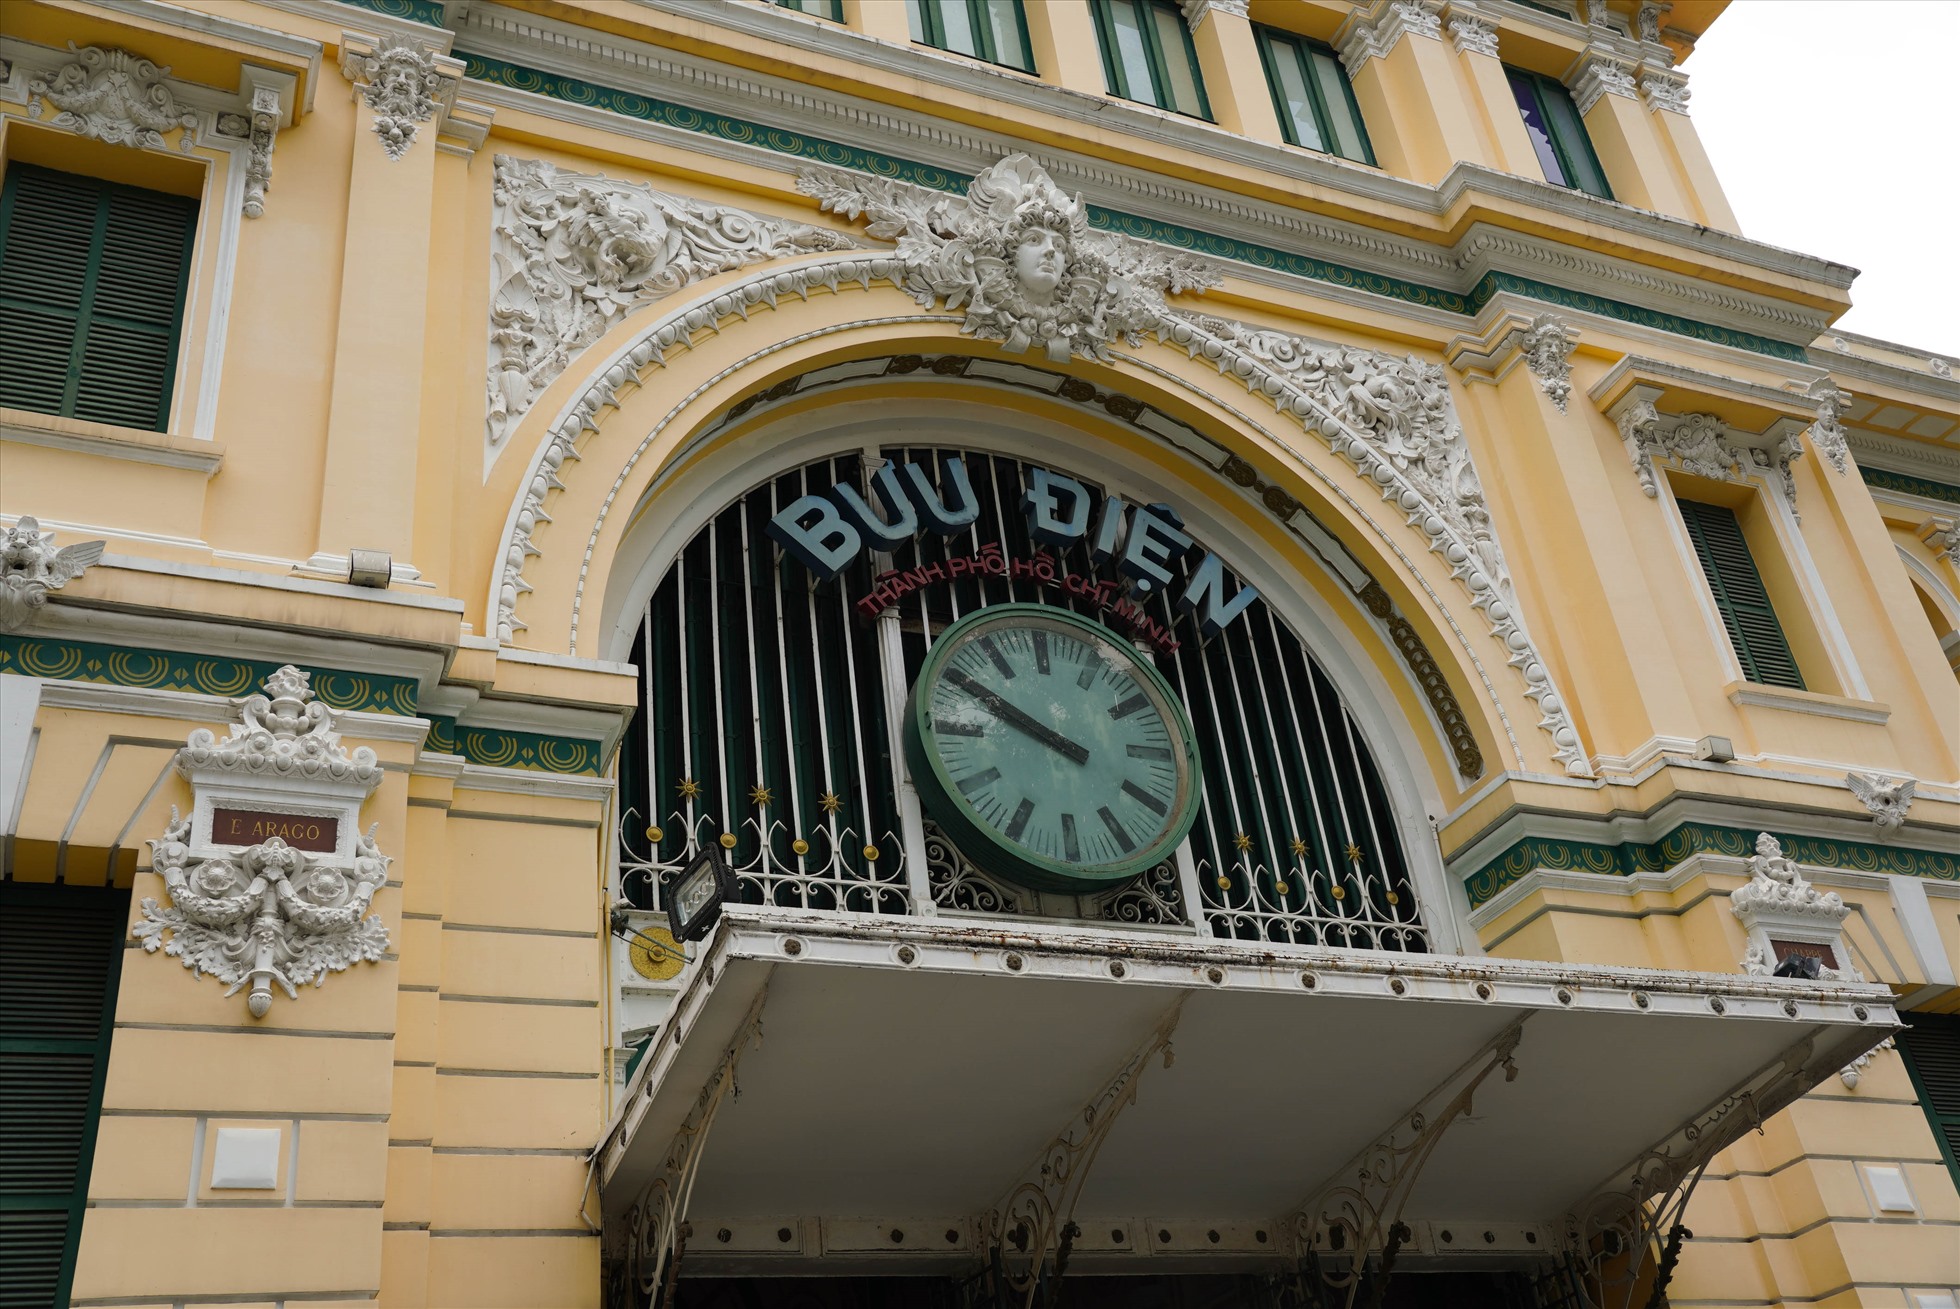 Cửa chính ra vào tòa nhà thiết kế vòm cung đặc trưng, với chiếc đồng hồ lớn ở giữa. Phía trên có tượng đắp nổi điêu khắc hình người đội vòng nguyệt quế và hàng chữ “Bưu điện Thành phố Hồ Chí Minh“, phía dưới đề năm xây dựng và khánh thành bưu điện “1886-1891“.